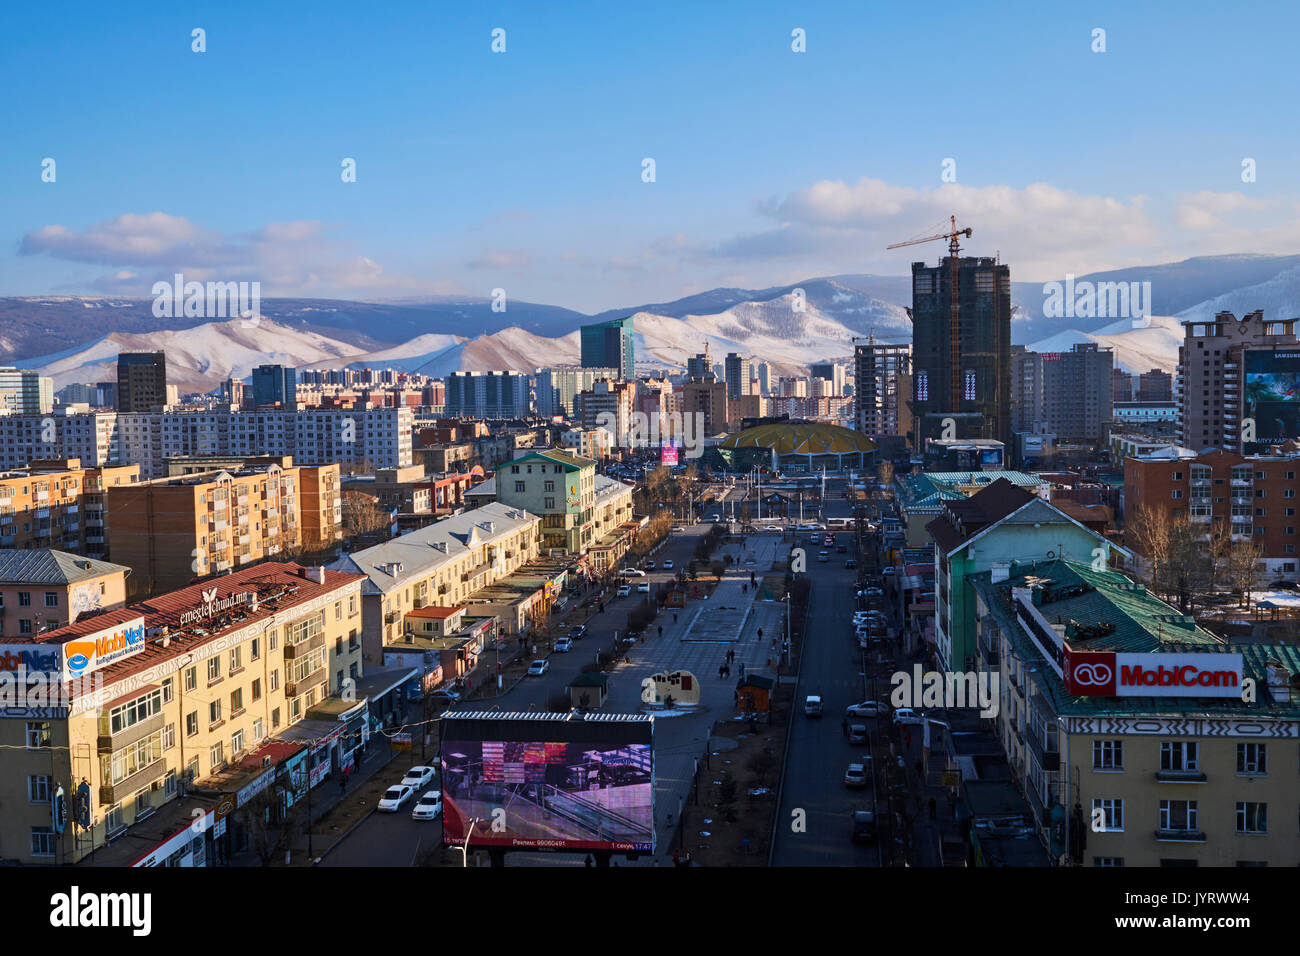 La Mongolie, Oulan-Bator, avenue de la paix à l'hiver Banque D'Images